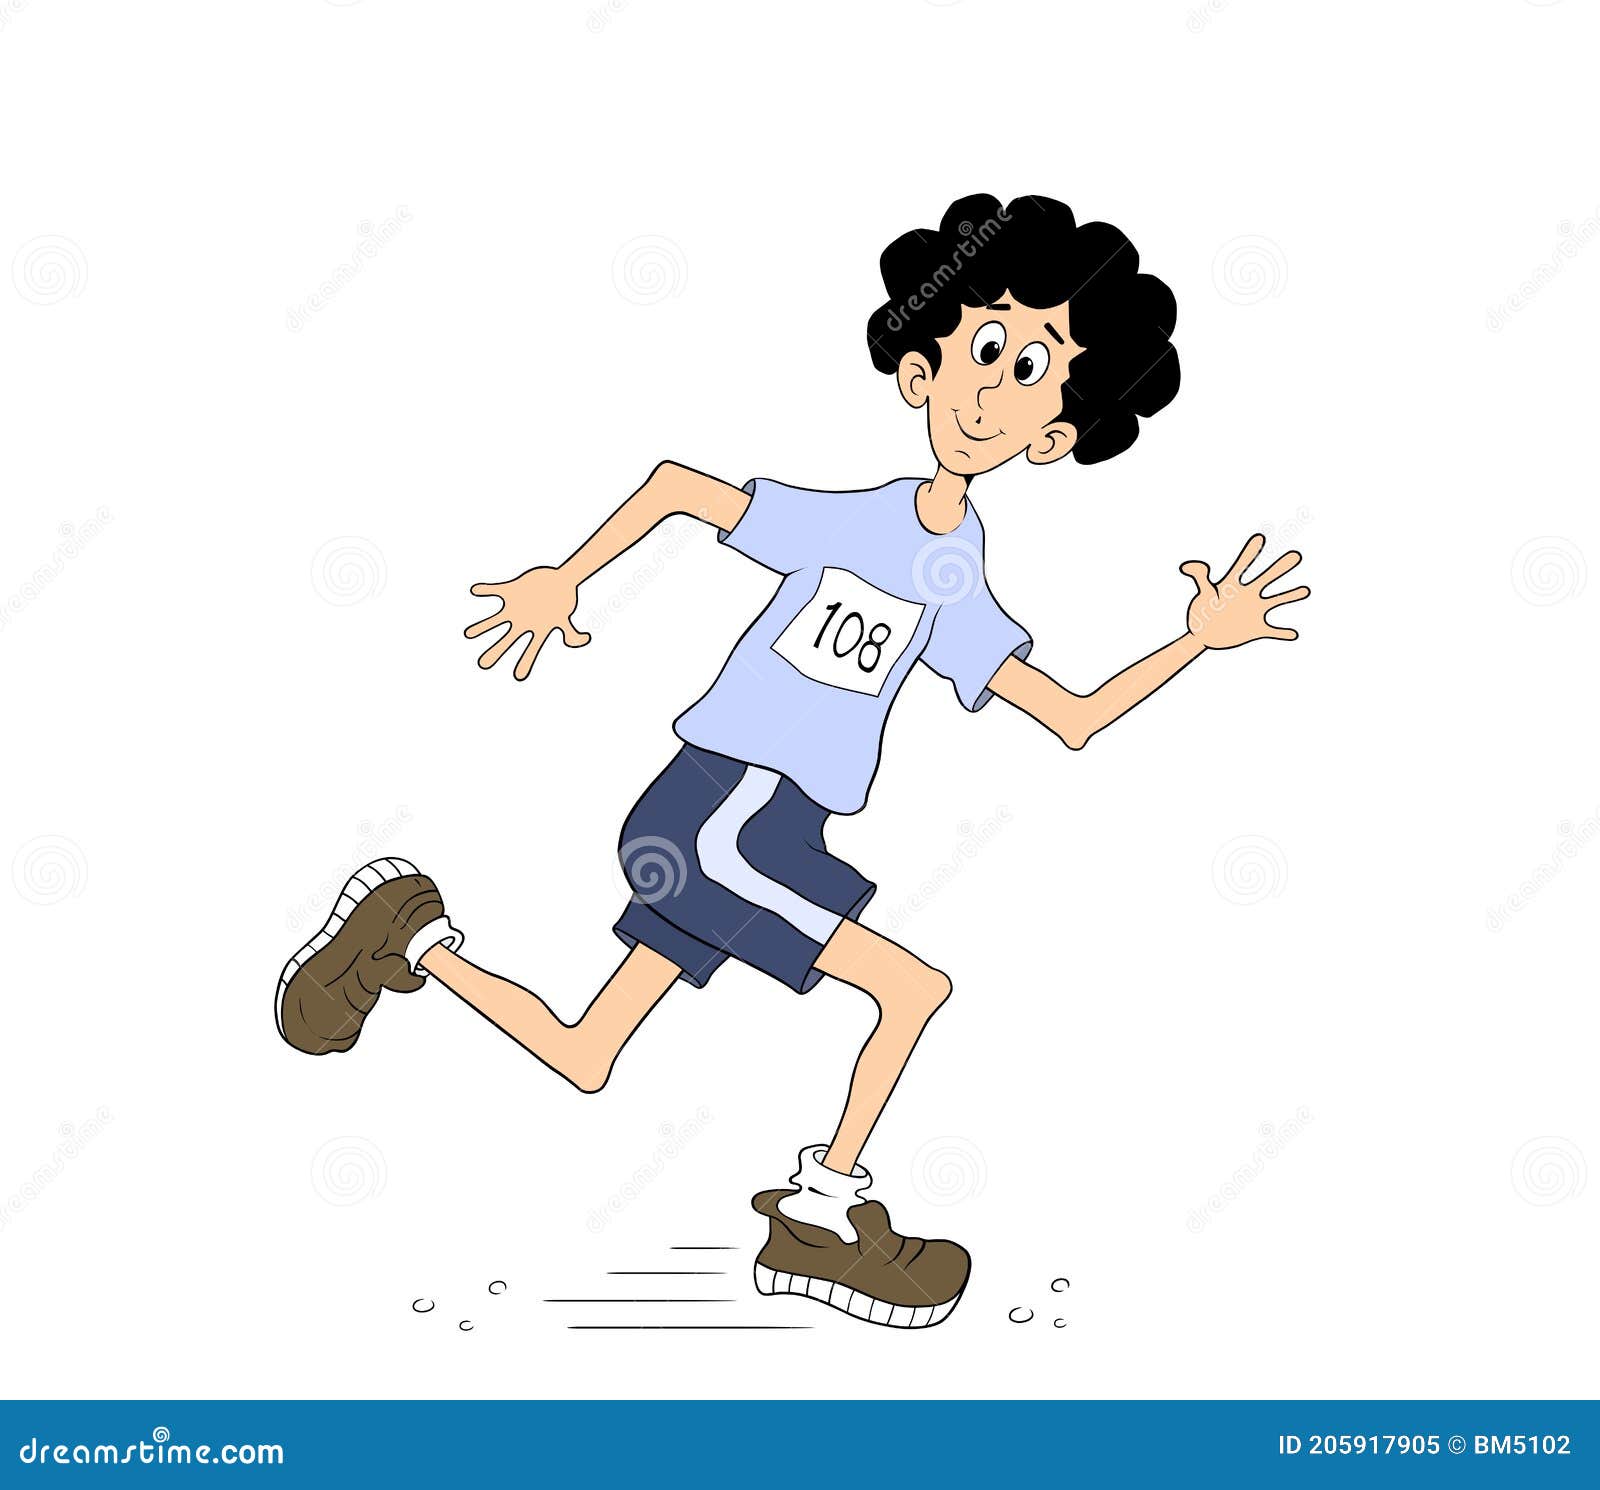 Cartoon person running stock illustration. Illustration of cartoon -  205917905